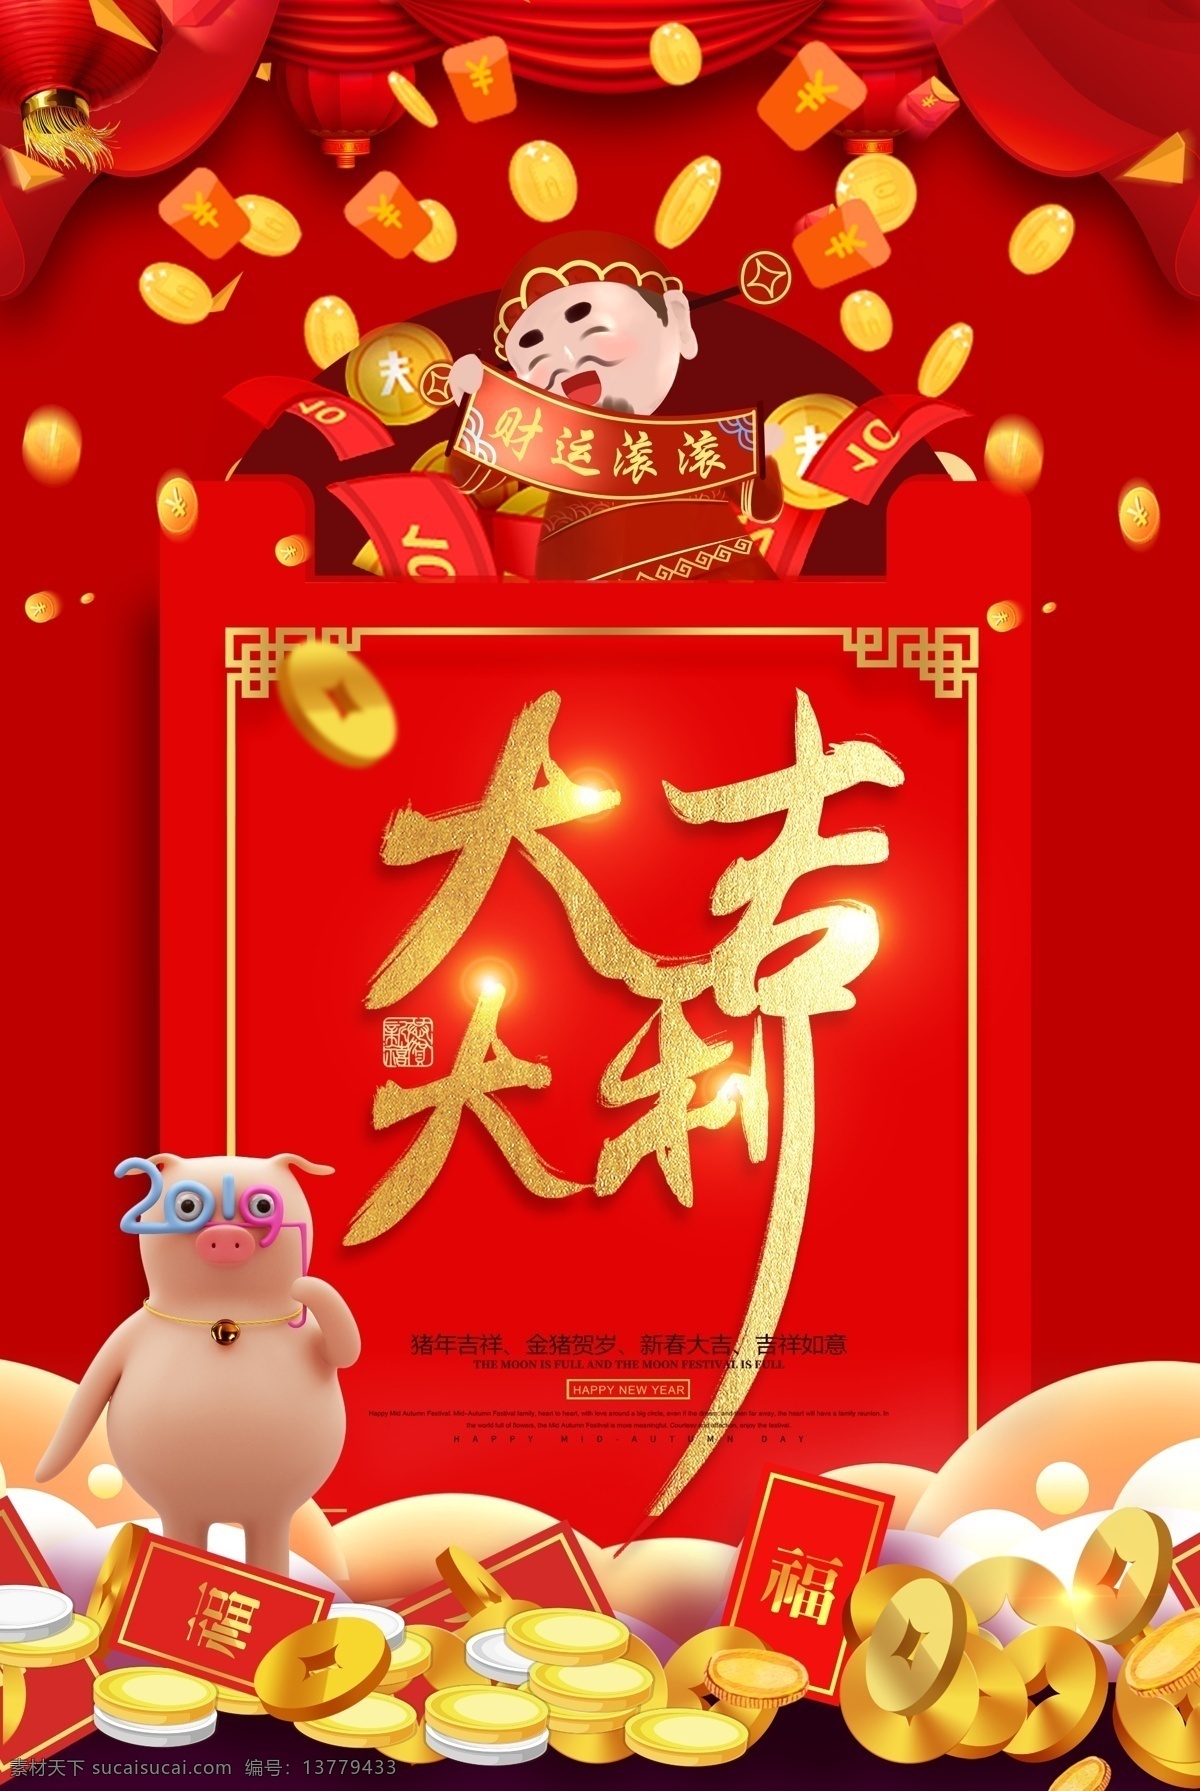 大吉大利 红包 祝福语 系列 新年 节日 大吉 大利 新春 春节 节日海报 海报